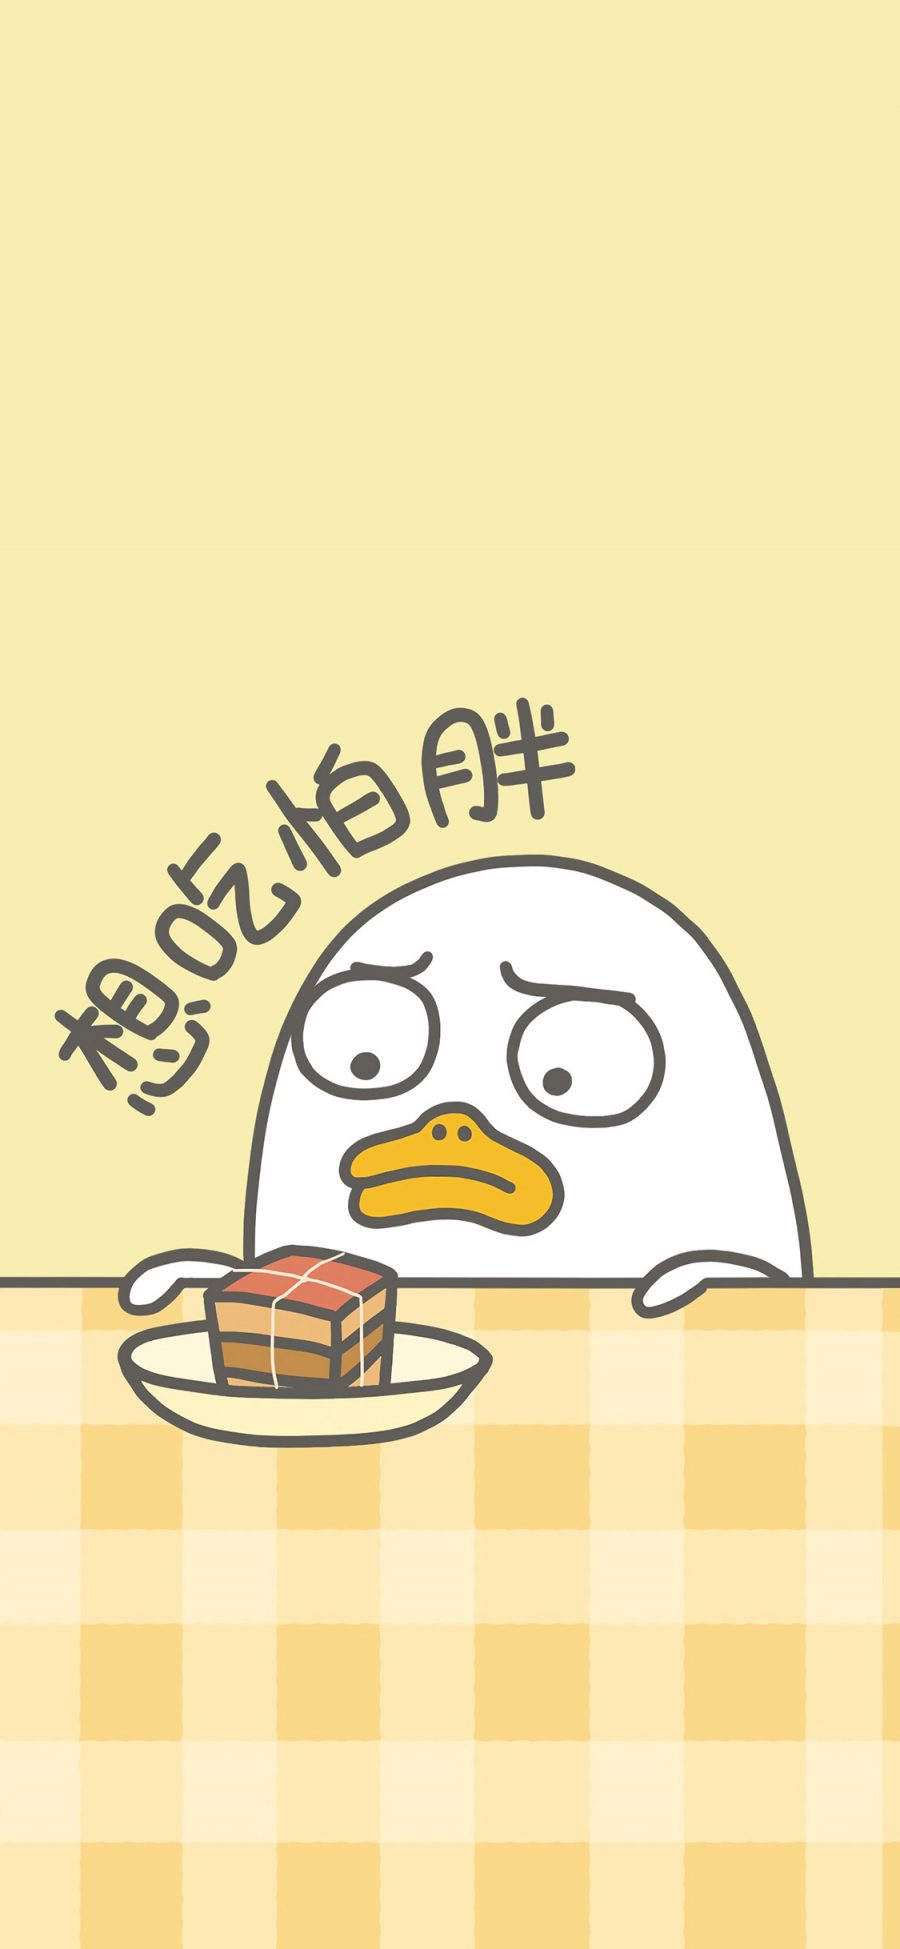 [2436×1125]想吃怕胖 小刘鸭 东坡肉 黄色 卡通 苹果手机动漫壁纸图片